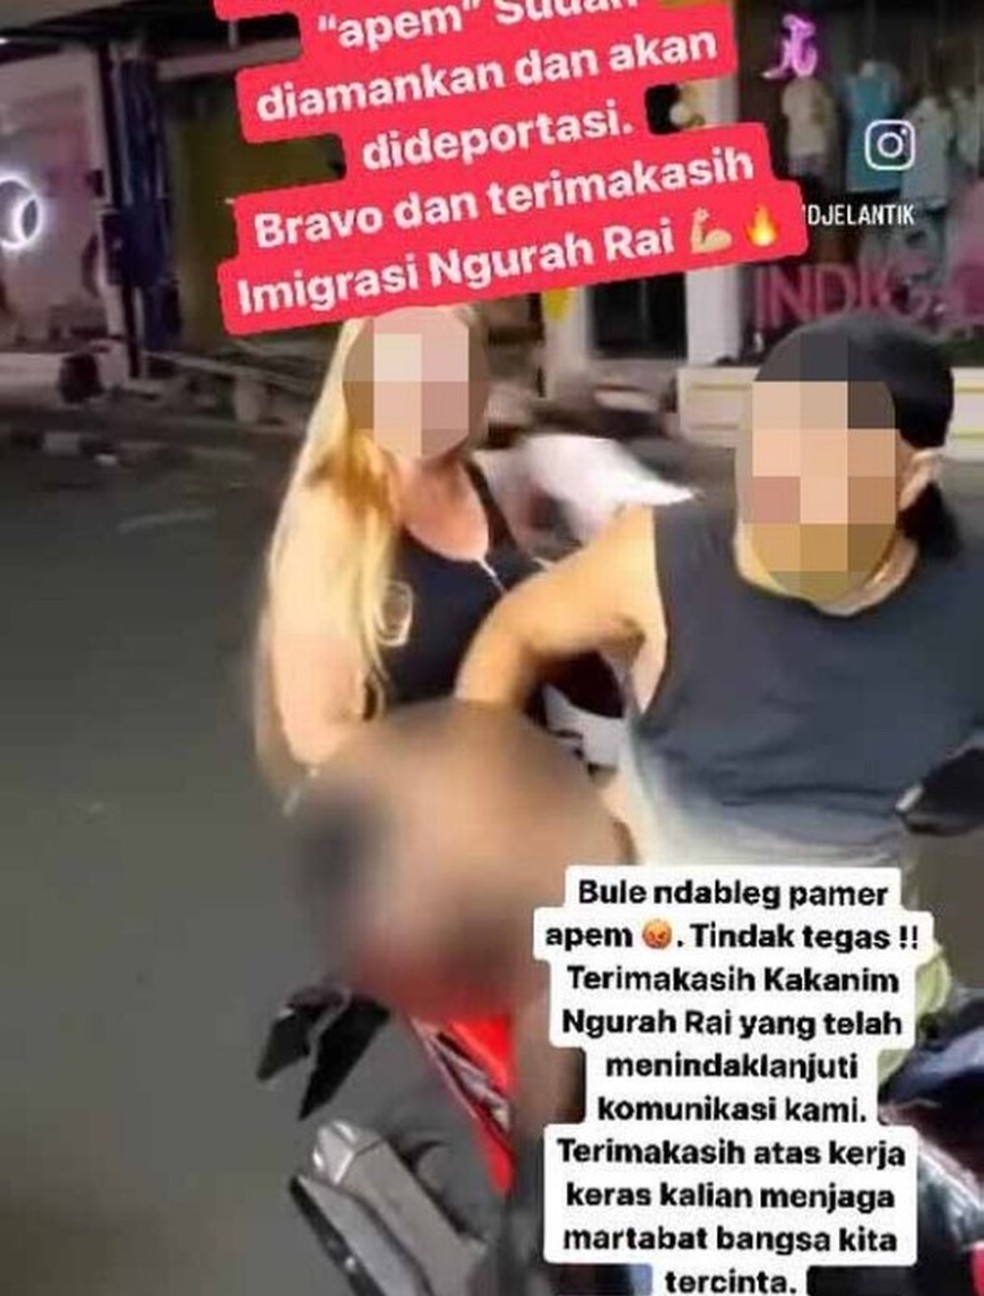 Turista dinamarquesa exibe partes íntimas sobre moto durante passeio em Bali — Foto: Reprodução